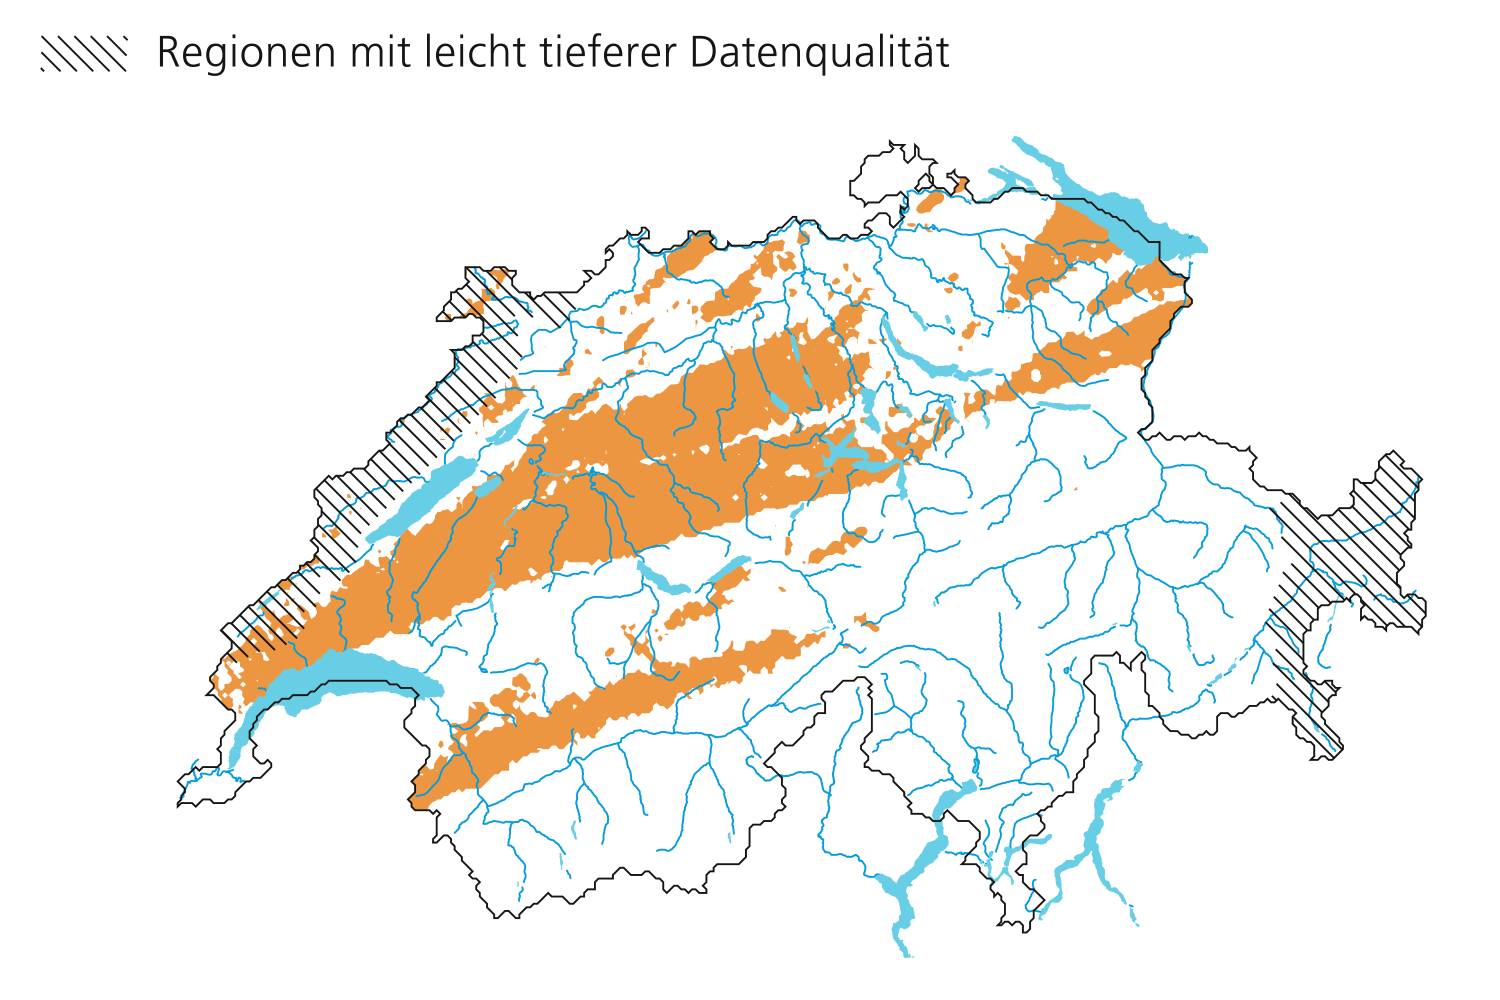 Hagelfläche am 23. Juli 2009. Regionen mit leicht tieferer Datenqualität entlang des Juras und im östlichen Graubünden.